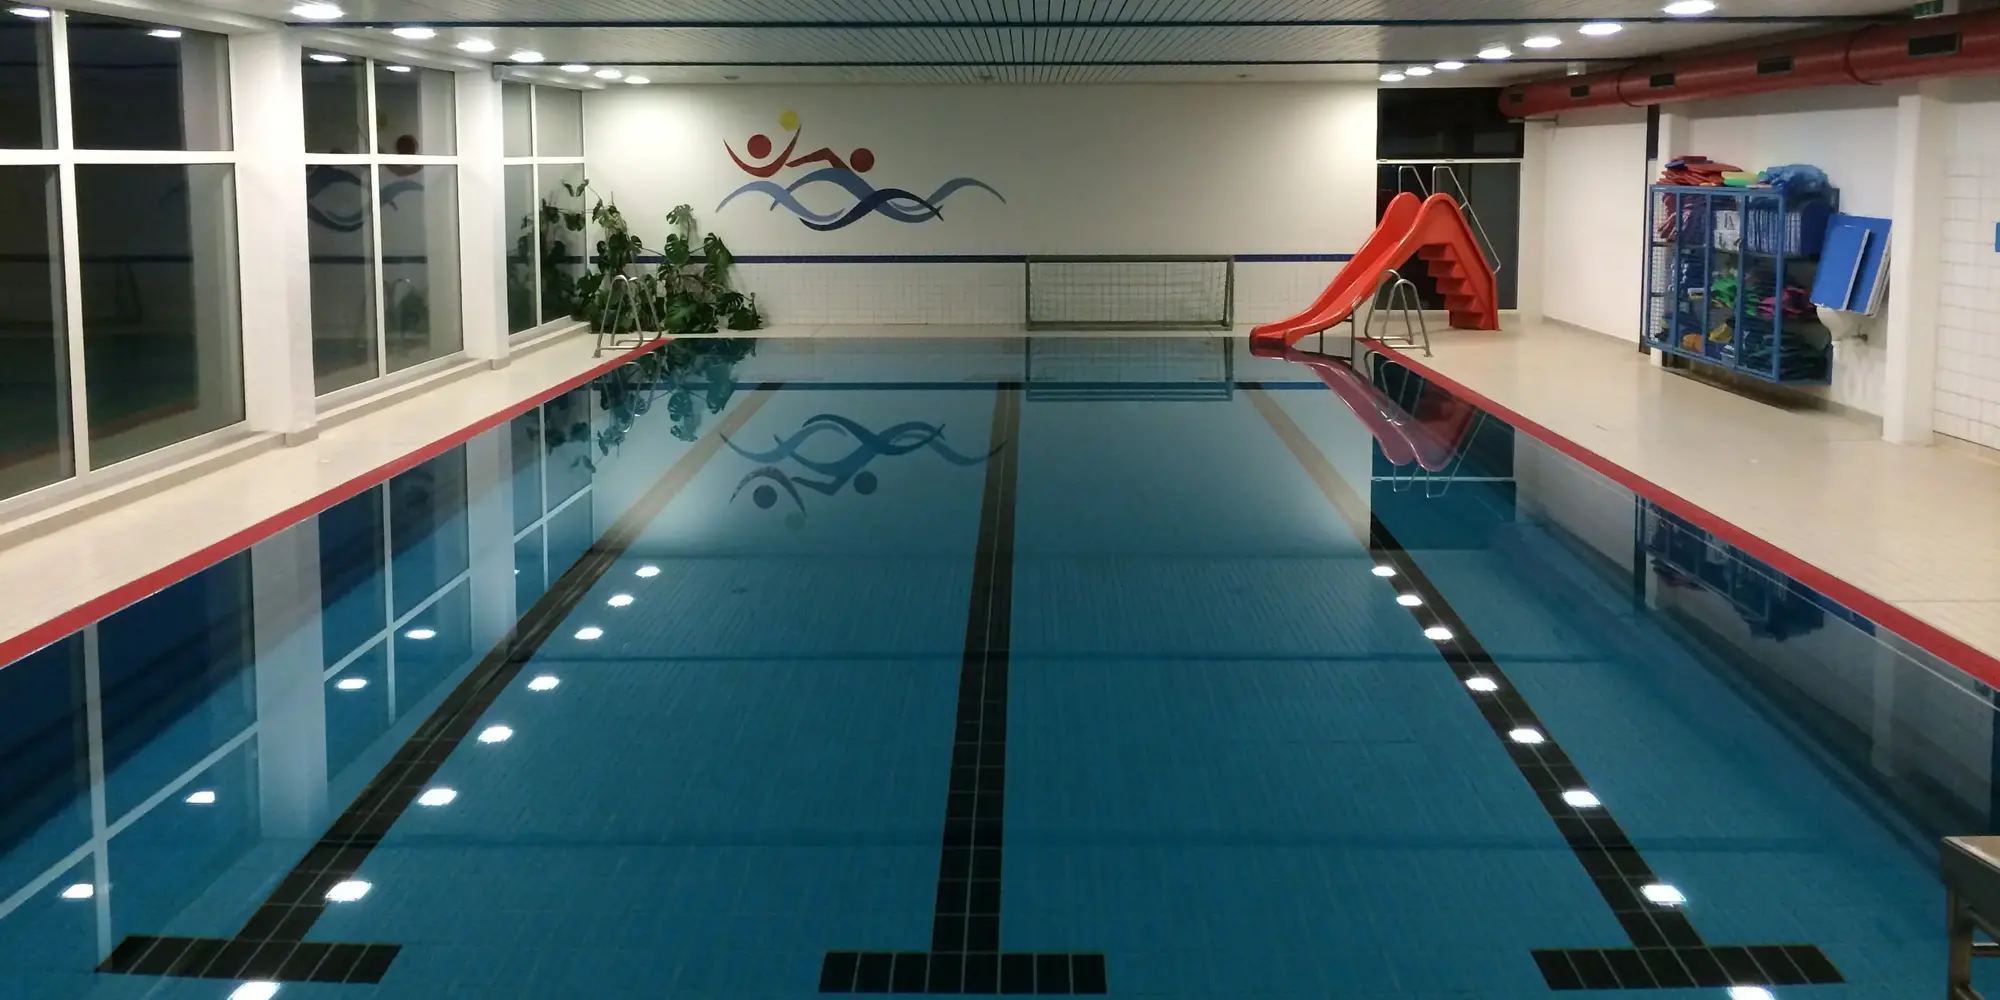 Das Sportbecken im Hallenbad von Siedlinghausen mit einer roten Wasserrutsche.